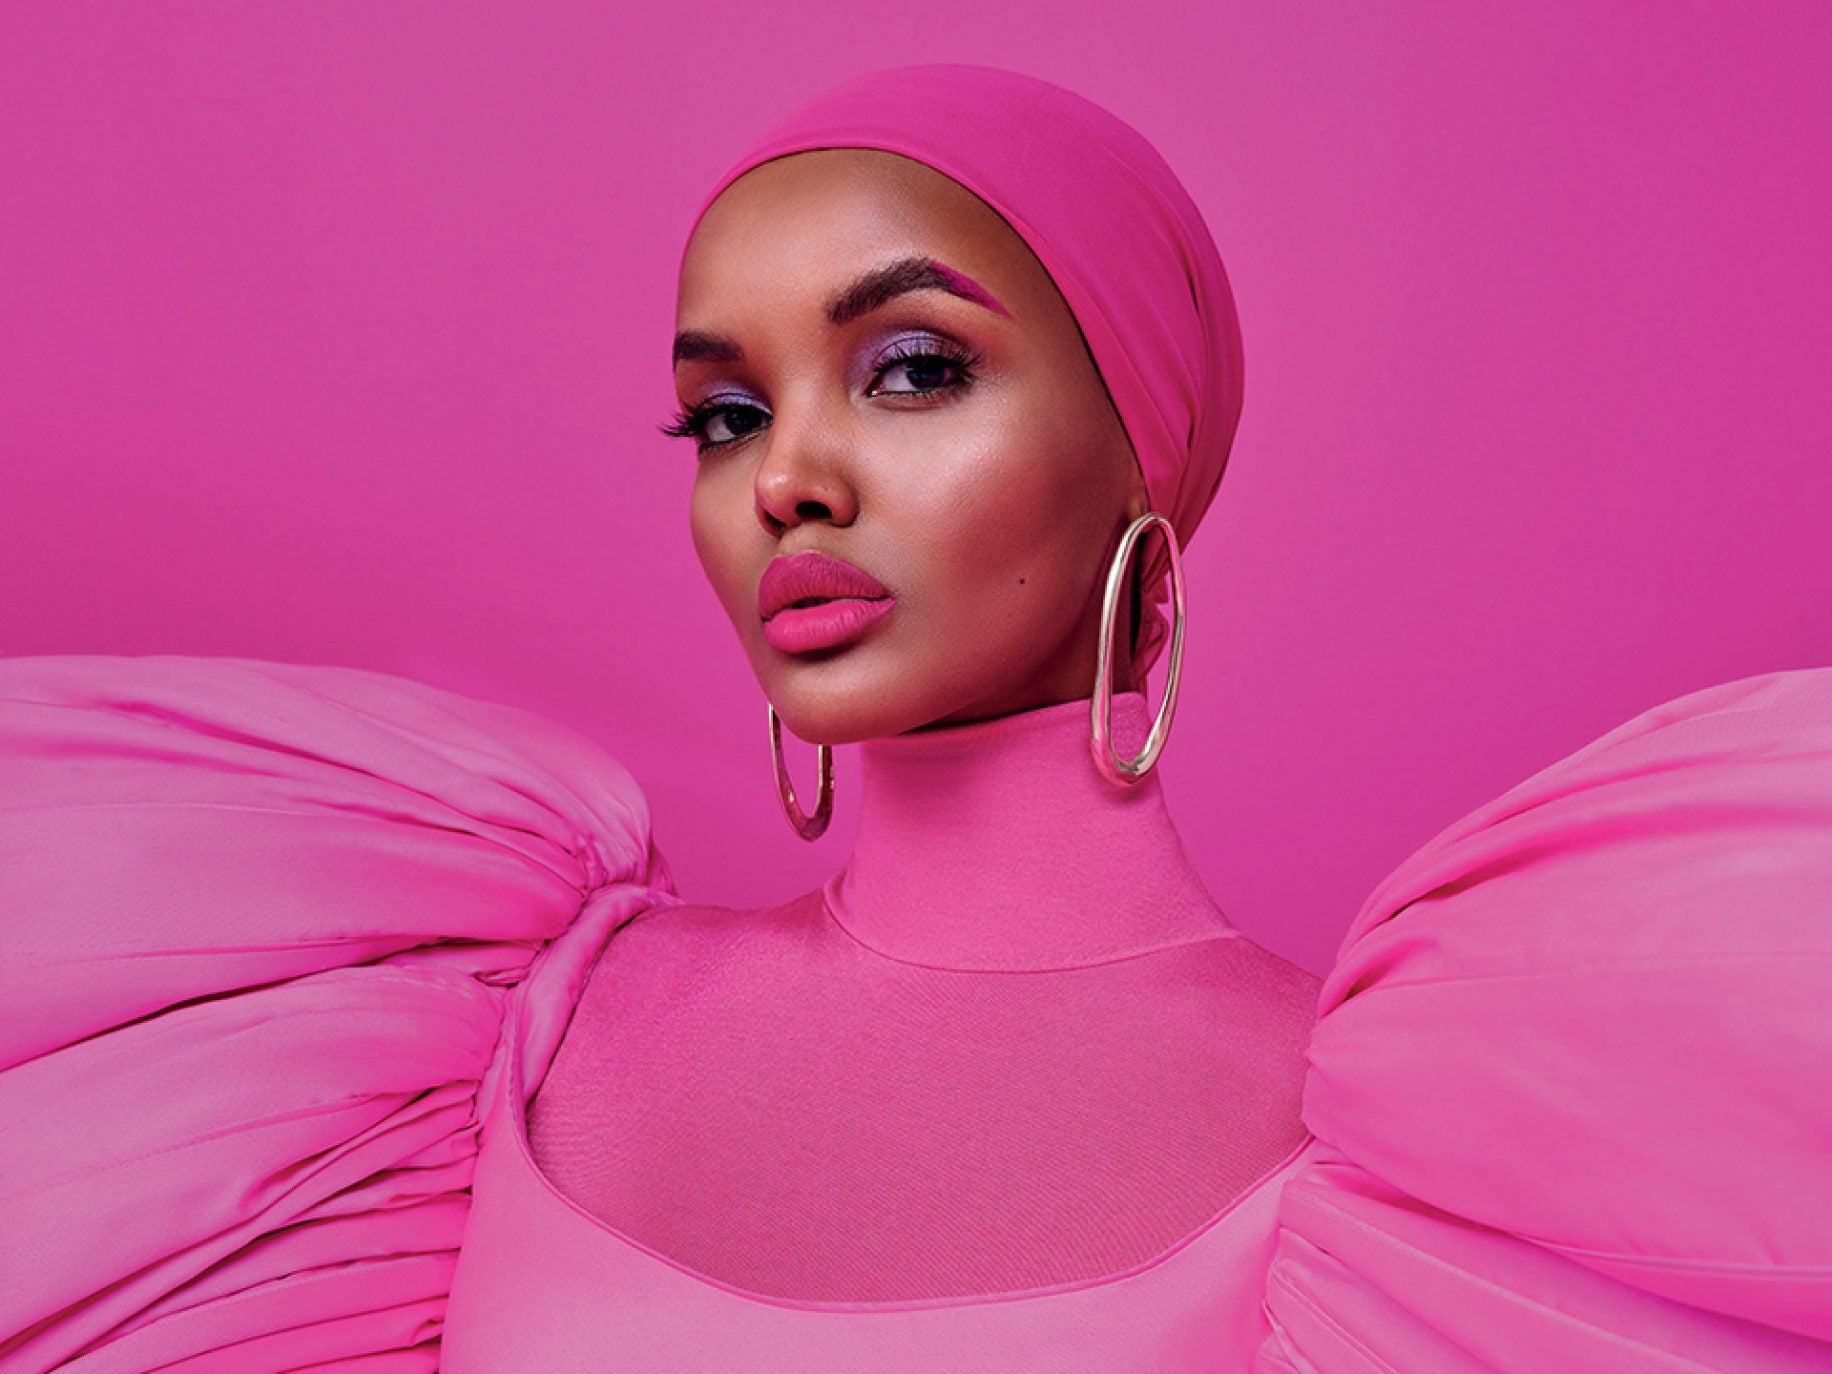 Nữ người mẫu đạo Hồi quyết định bỏ nghề vì đi ngược lại với niềm tin tôn giáo - Ảnh 7